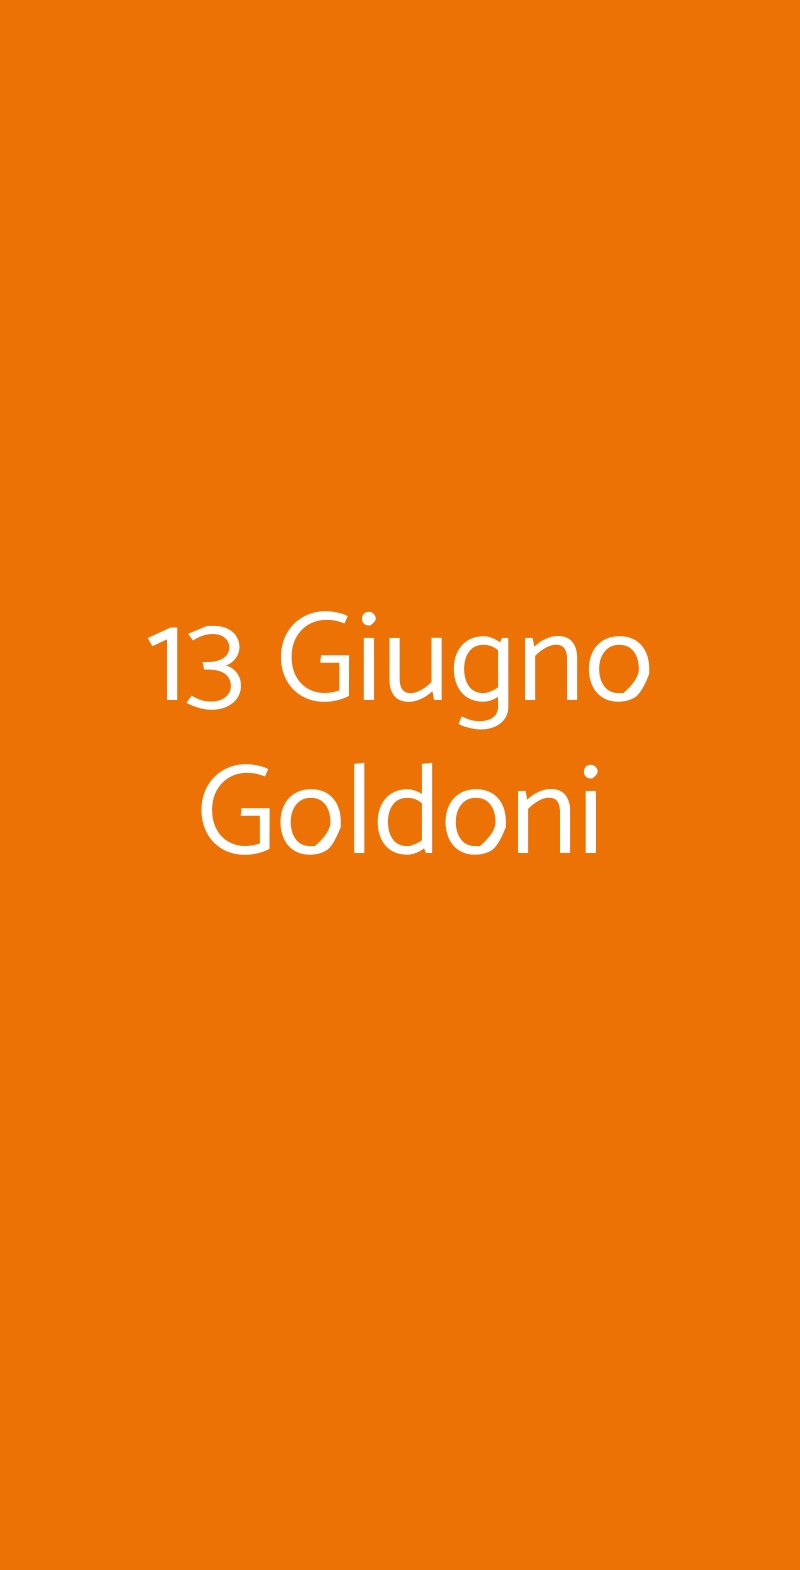 13 Giugno Goldoni Milano menù 1 pagina